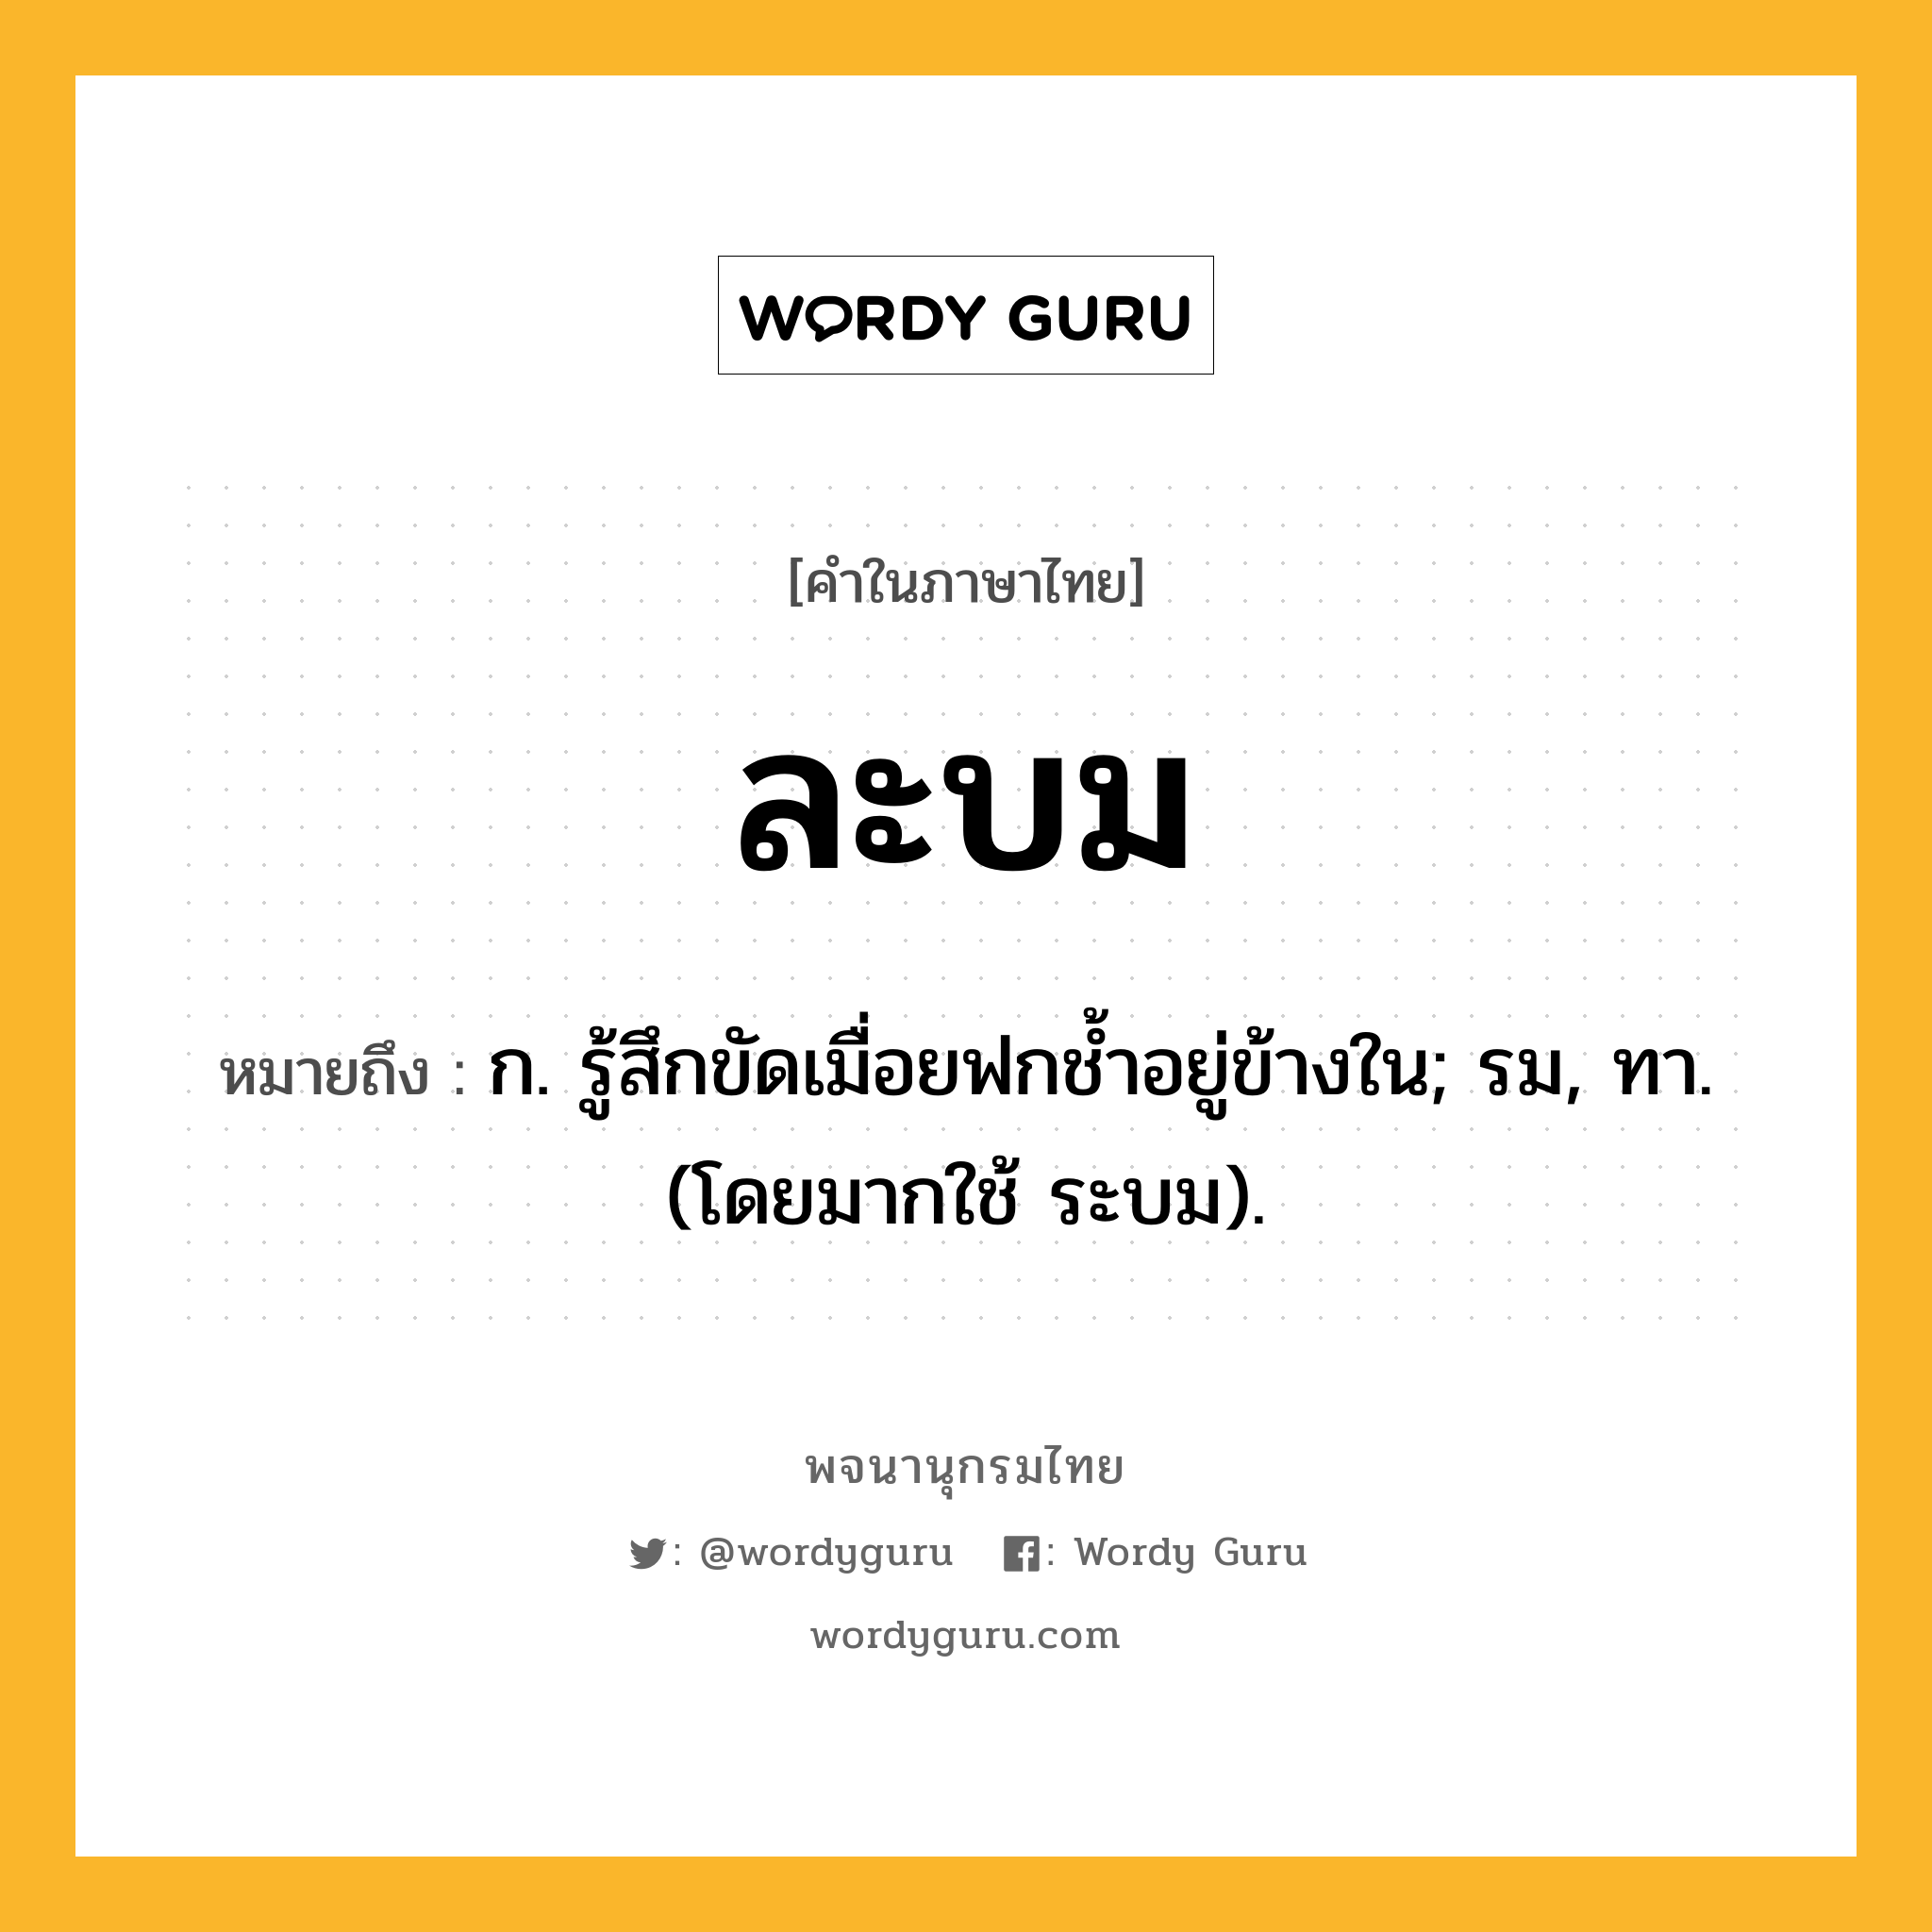 ละบม ความหมาย หมายถึงอะไร?, คำในภาษาไทย ละบม หมายถึง ก. รู้สึกขัดเมื่อยฟกชํ้าอยู่ข้างใน; รม, ทา. (โดยมากใช้ ระบม).